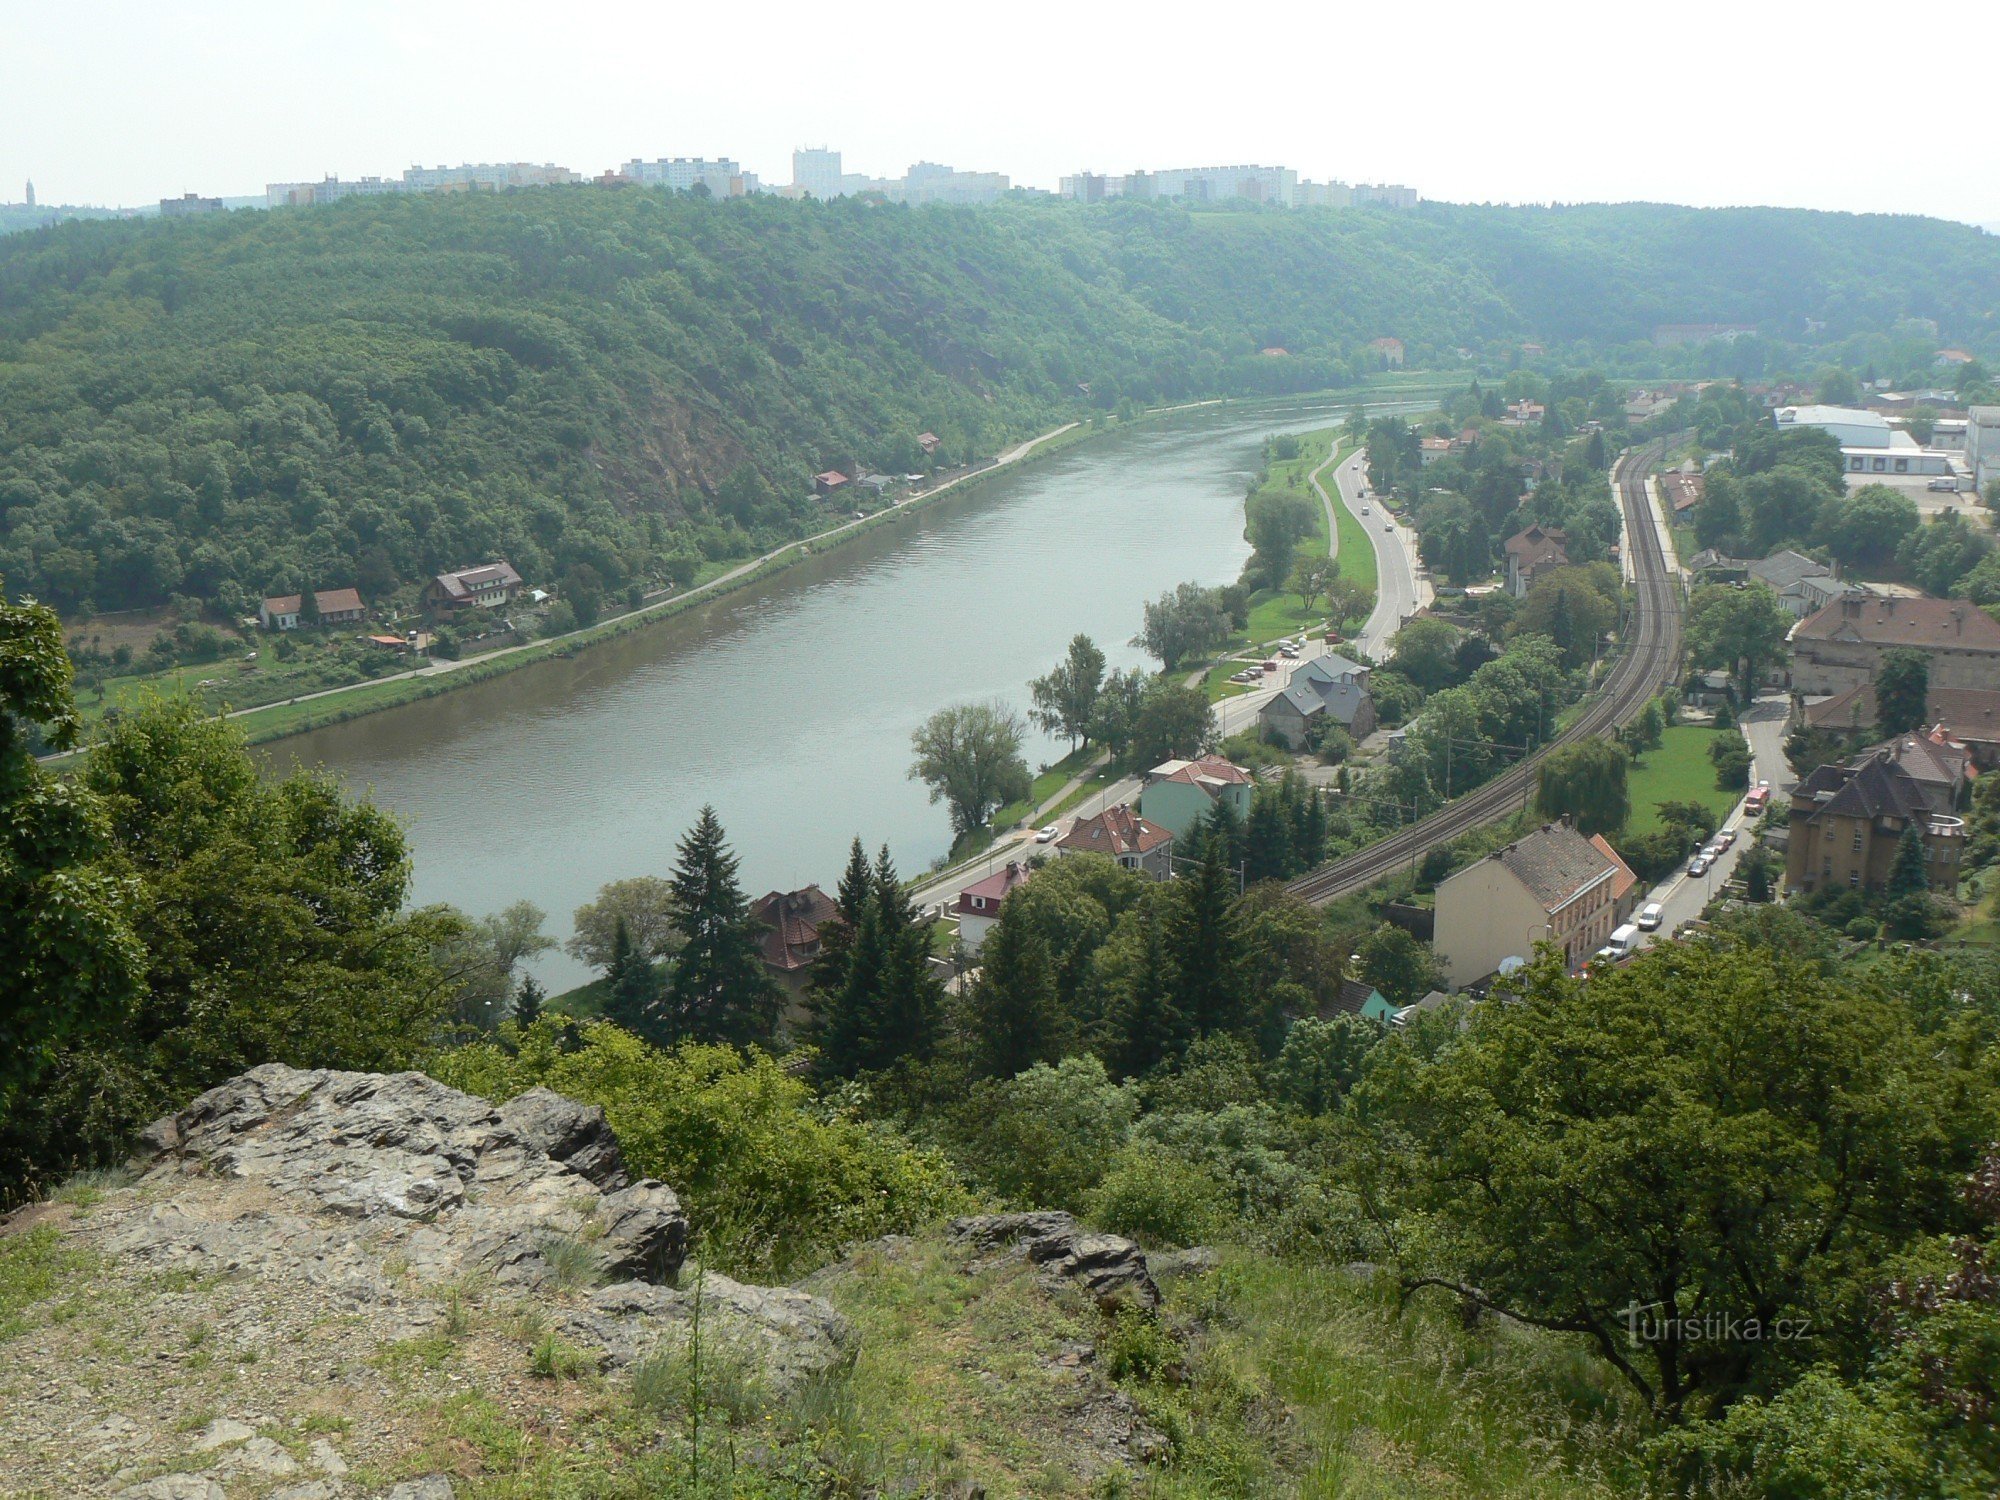 Dolina Vltave in Sedlec, ulica Roztocká